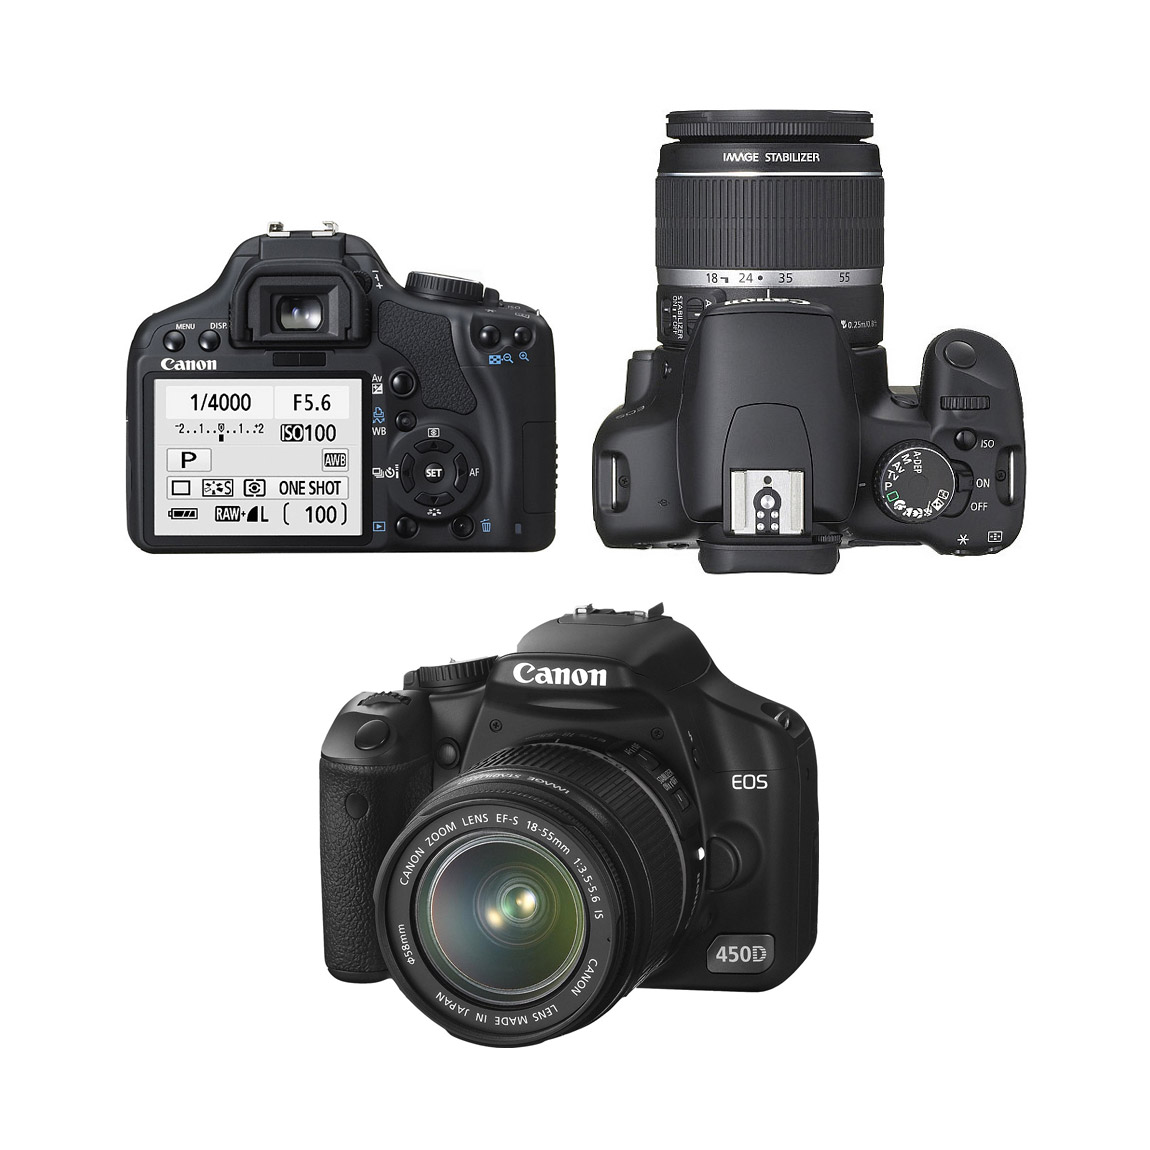 Máy ảnh DSLR giá rẻ đáng mua nhất Canon EOS 450D được trang bị nhiều cải tiến đáng kể so với model tiền nhiệm